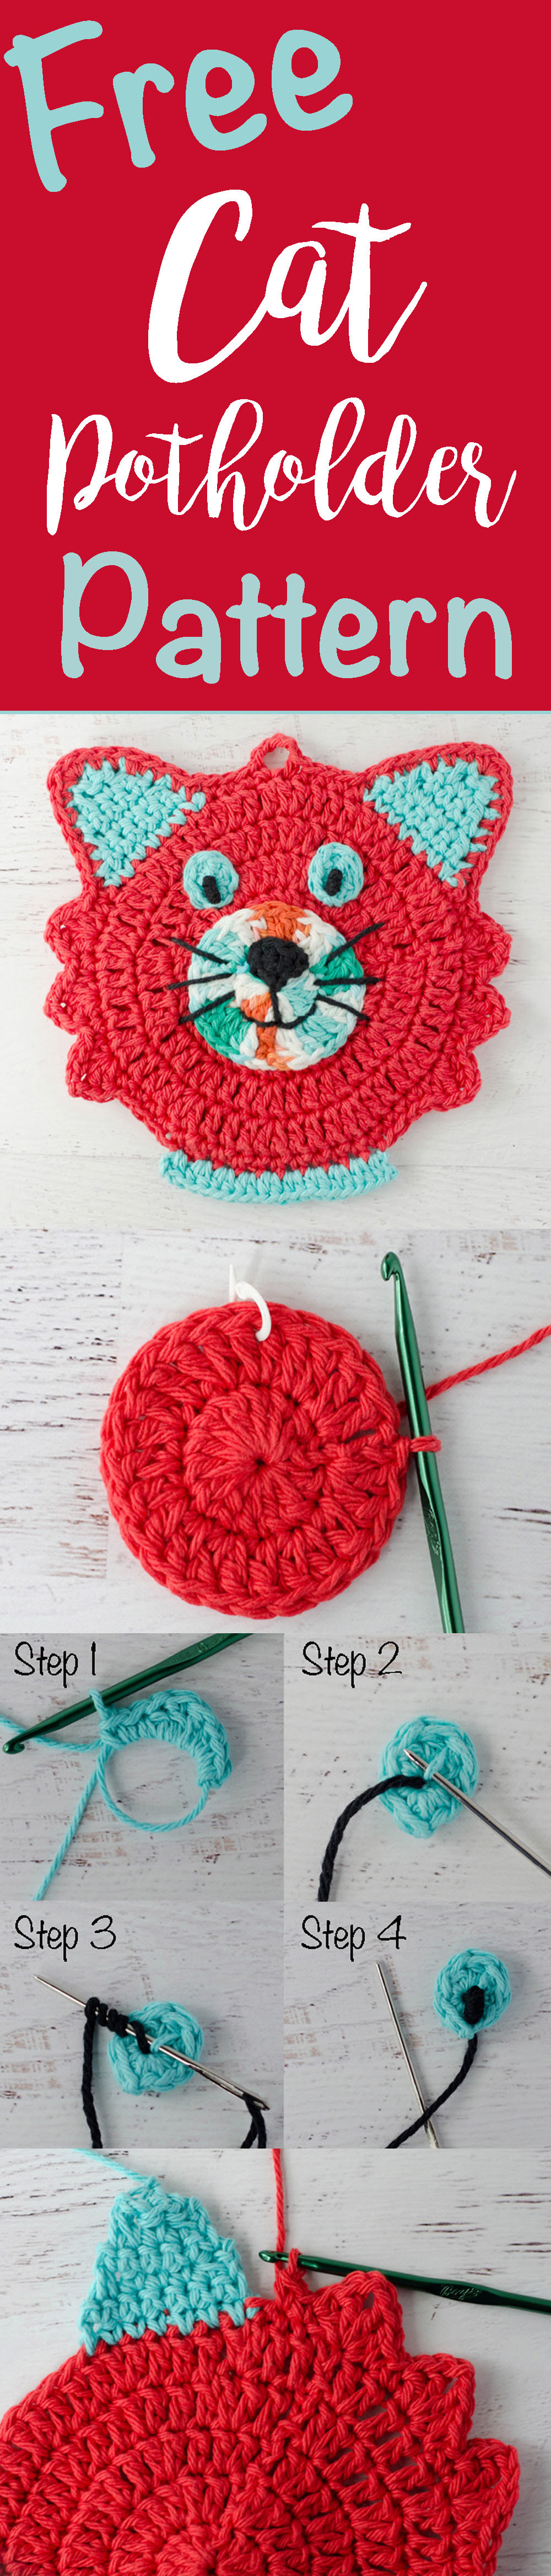 Knit Potholder Patterns Crochet Cat Potholder Pattern Crochet 365 Knit Too